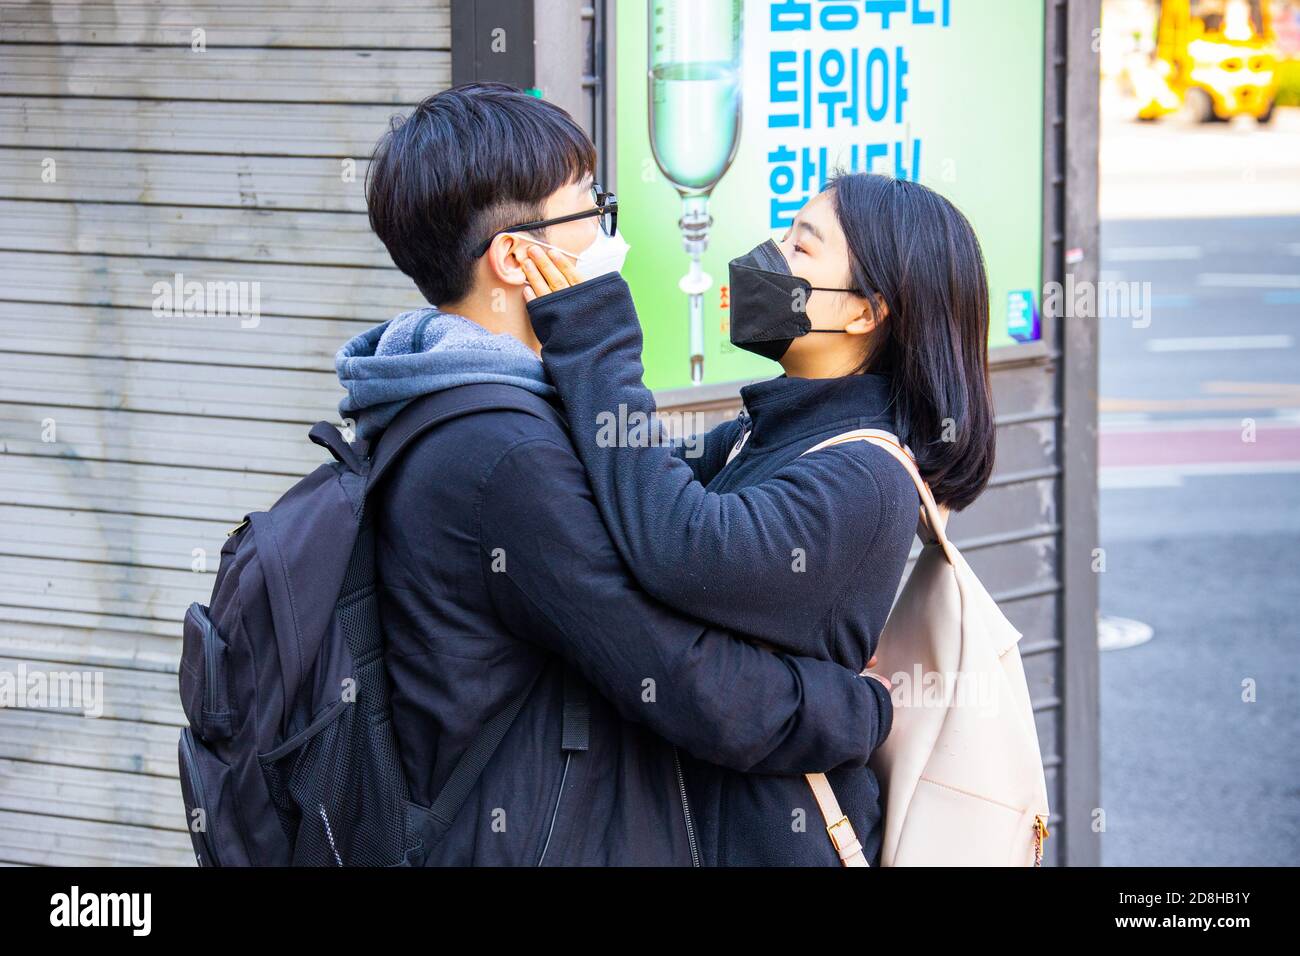 Pareja joven que lleva máscaras durante la pandemia de Coronavirus, Seúl, Corea del Sur Foto de stock